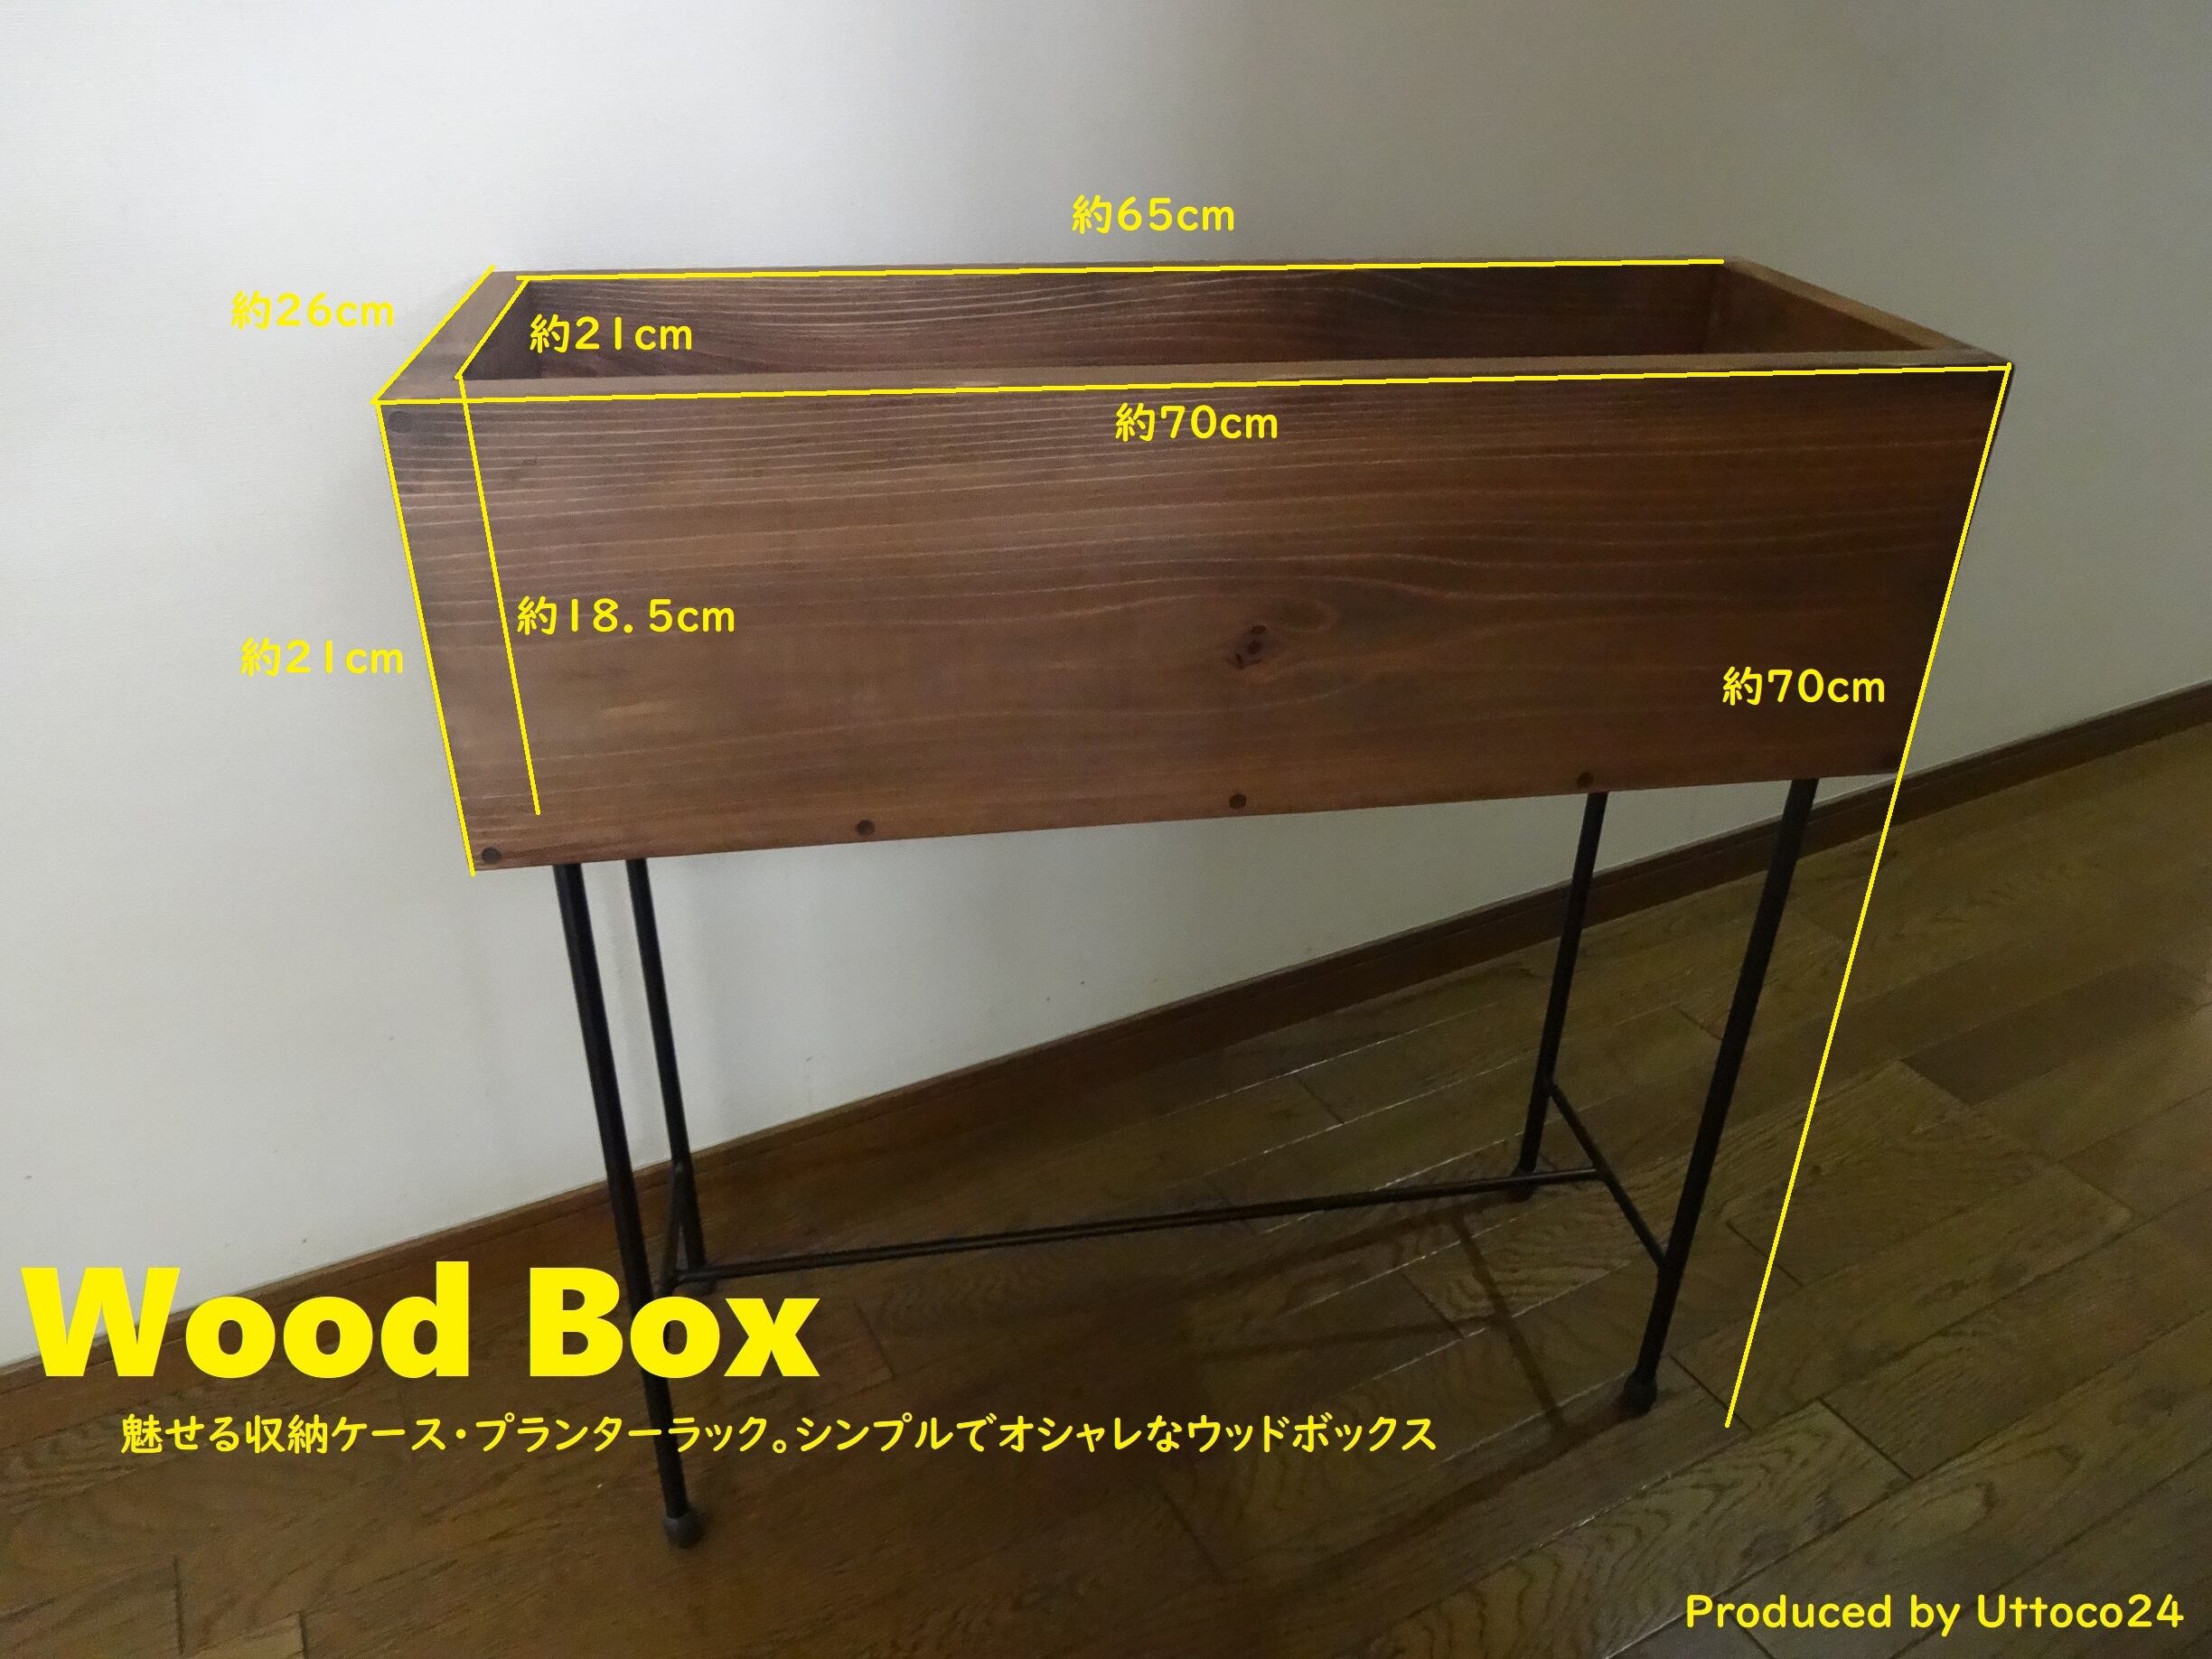 41 ウッドボックス / Wood Box Uttoco24 収納ボックス プランター